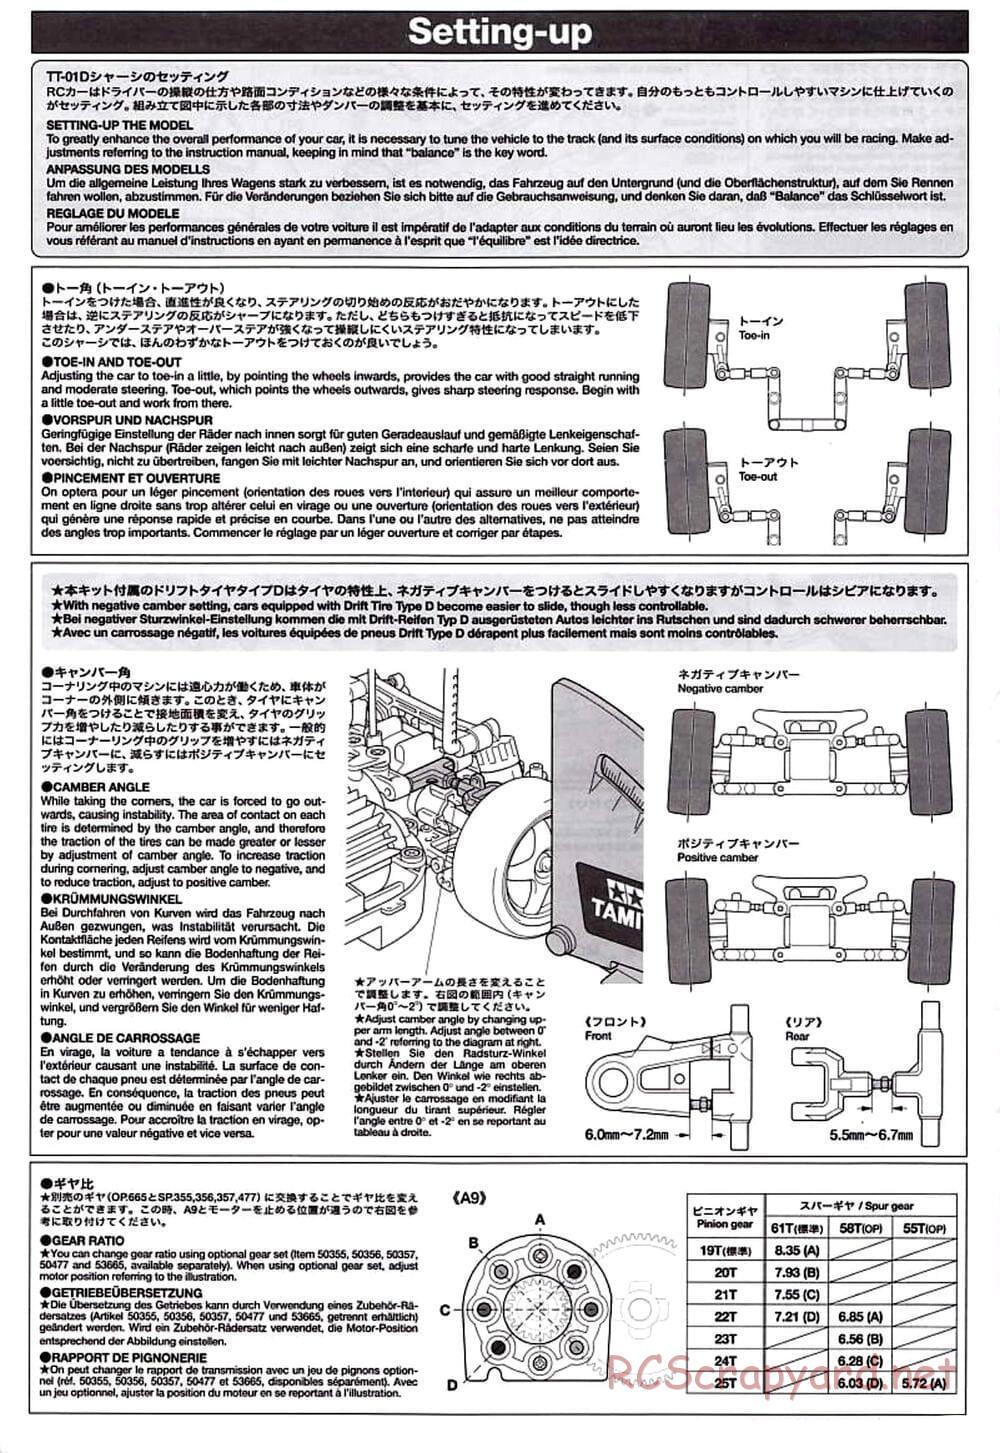 Tamiya - TT-01D Chassis - Manual - Page 17